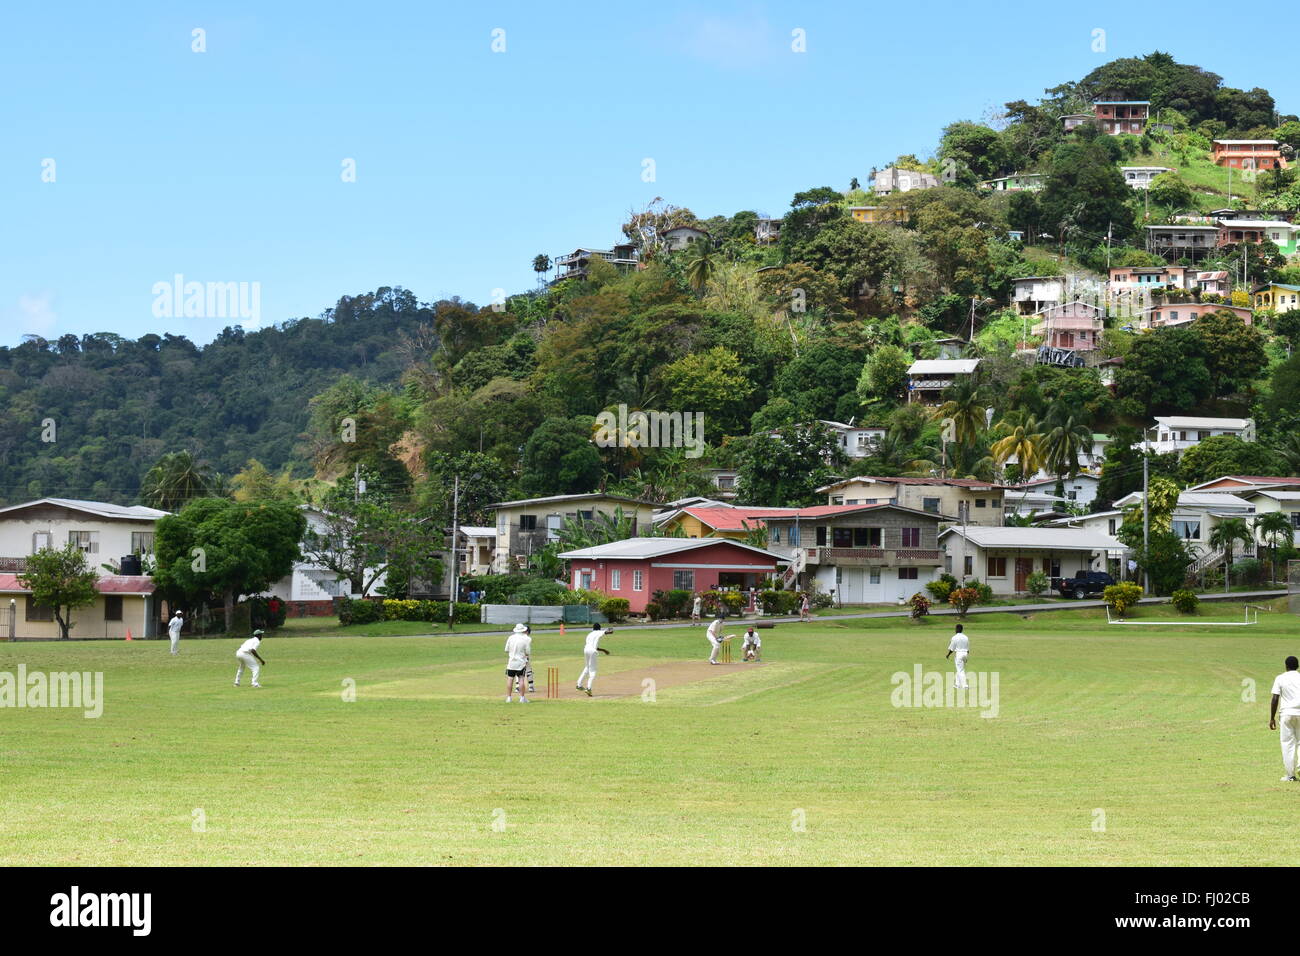 Un jeu de cricket à l'un des motifs les plus pittoresques au monde, Martinique, Tobago. Banque D'Images